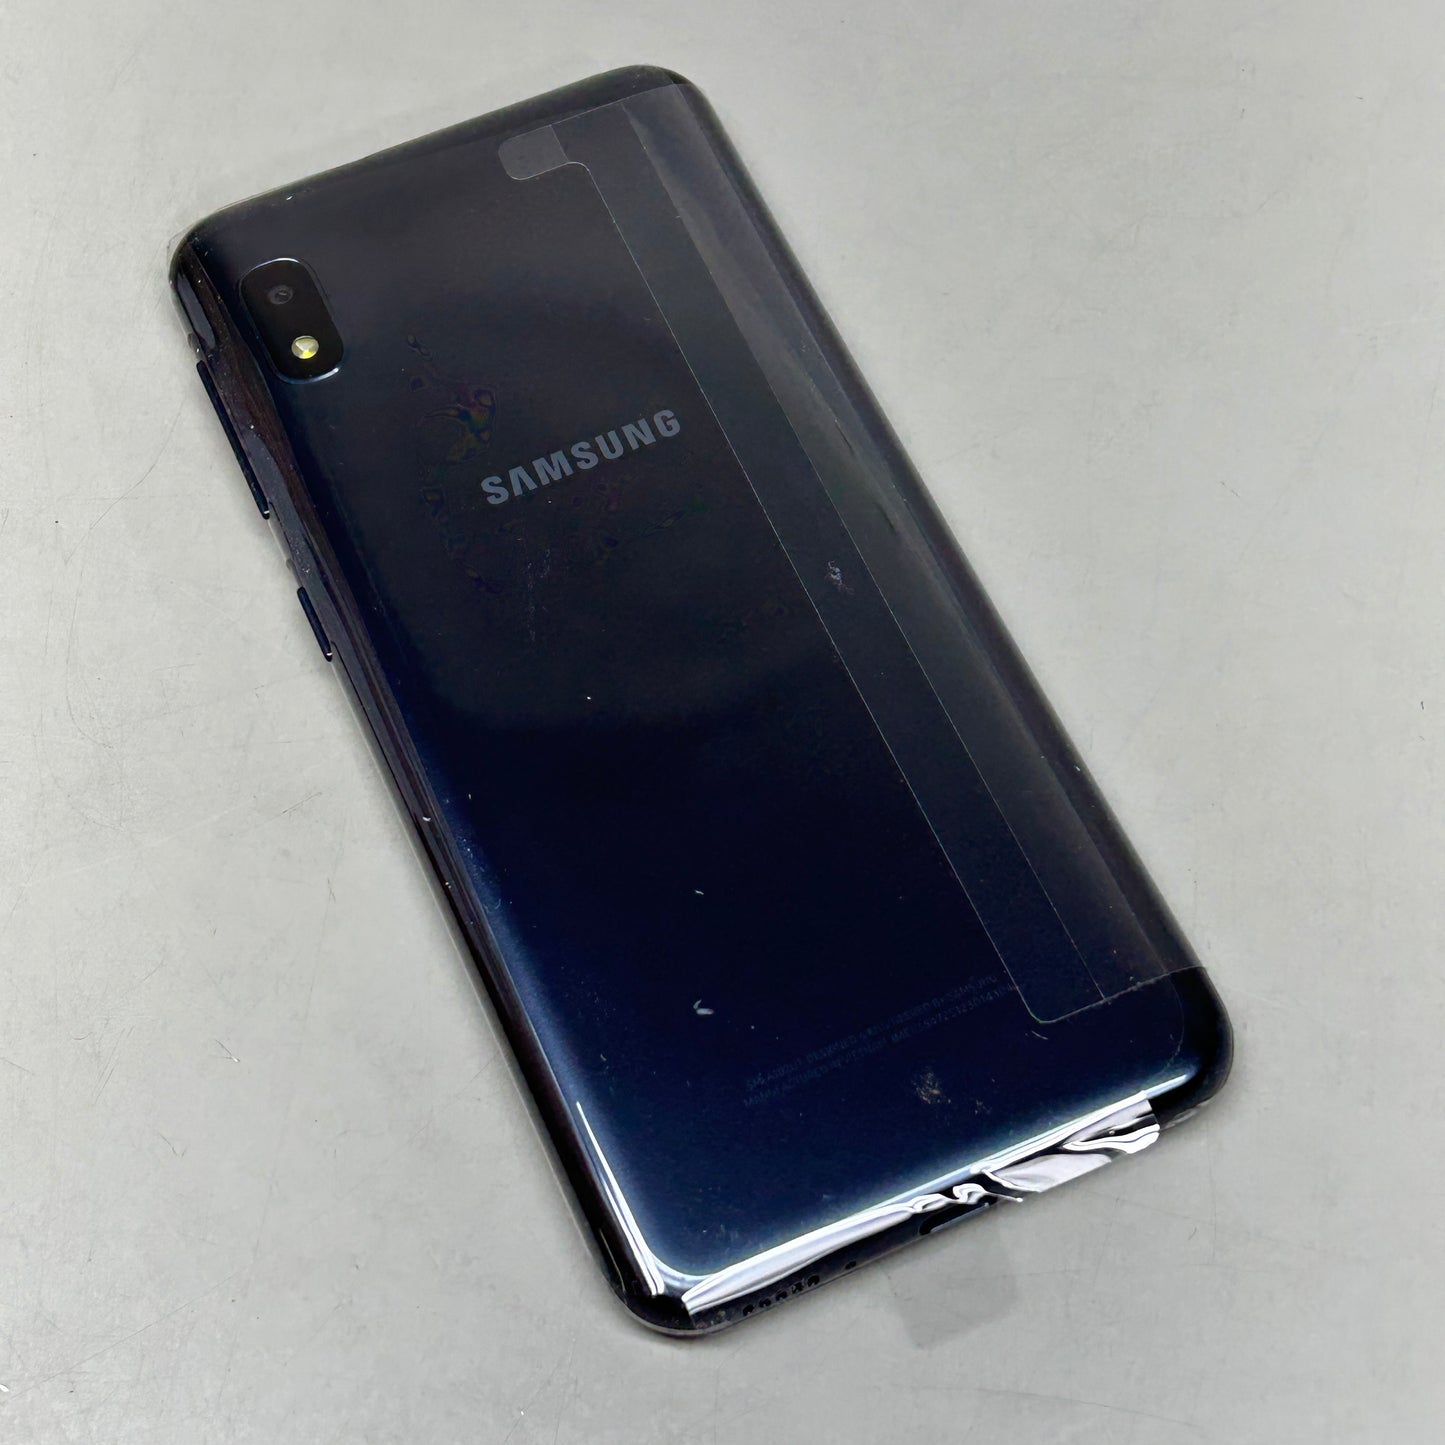 SAMSUNG Galaxy A10e 32GB Unlocked by Samsung Black (New)